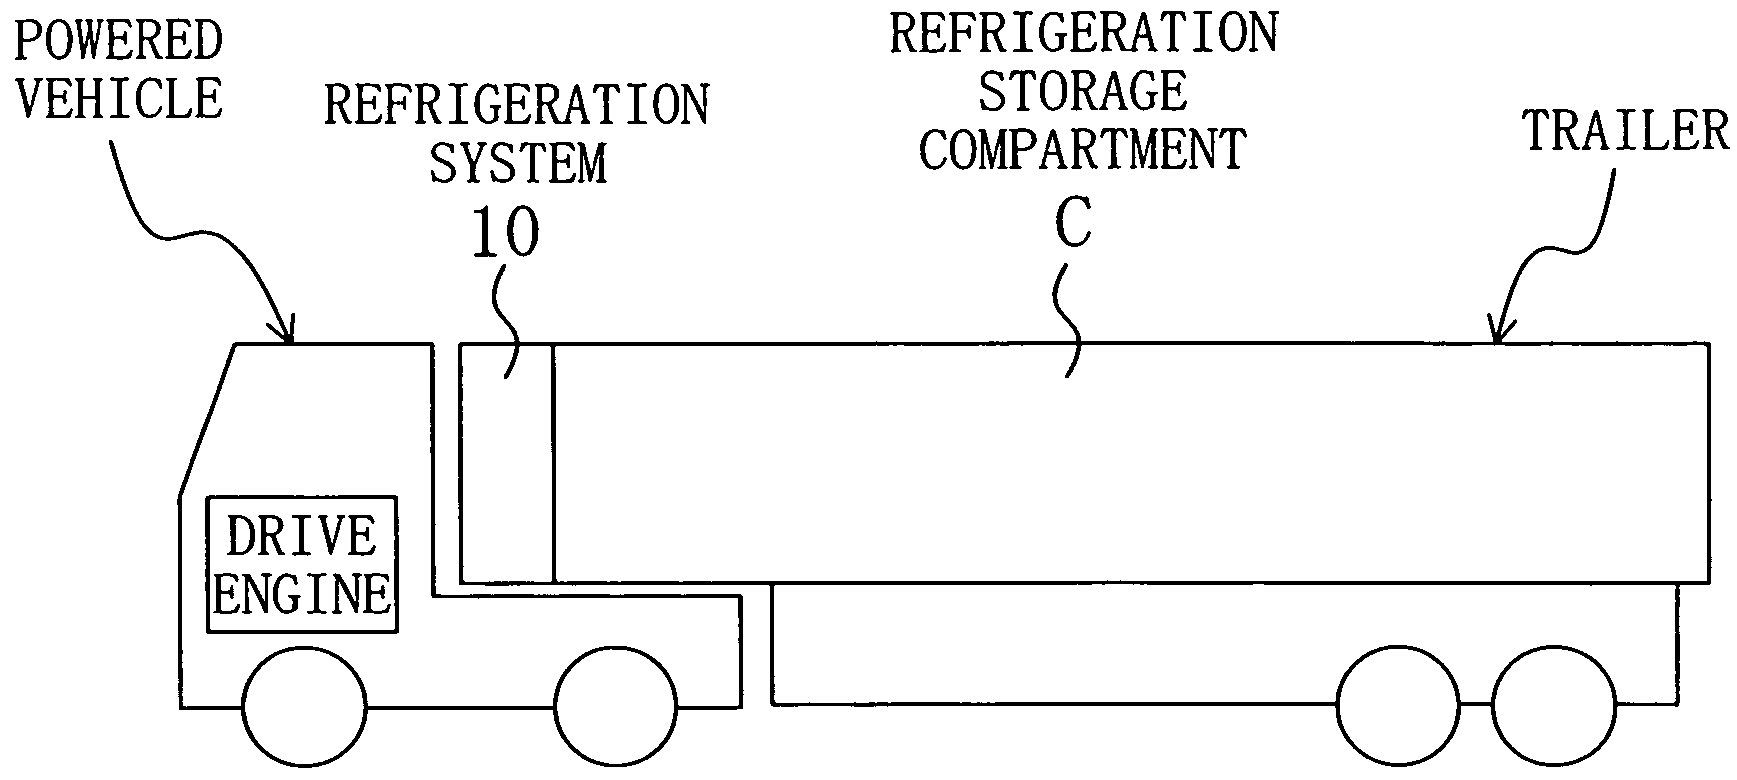 Trailer Refrigeration System